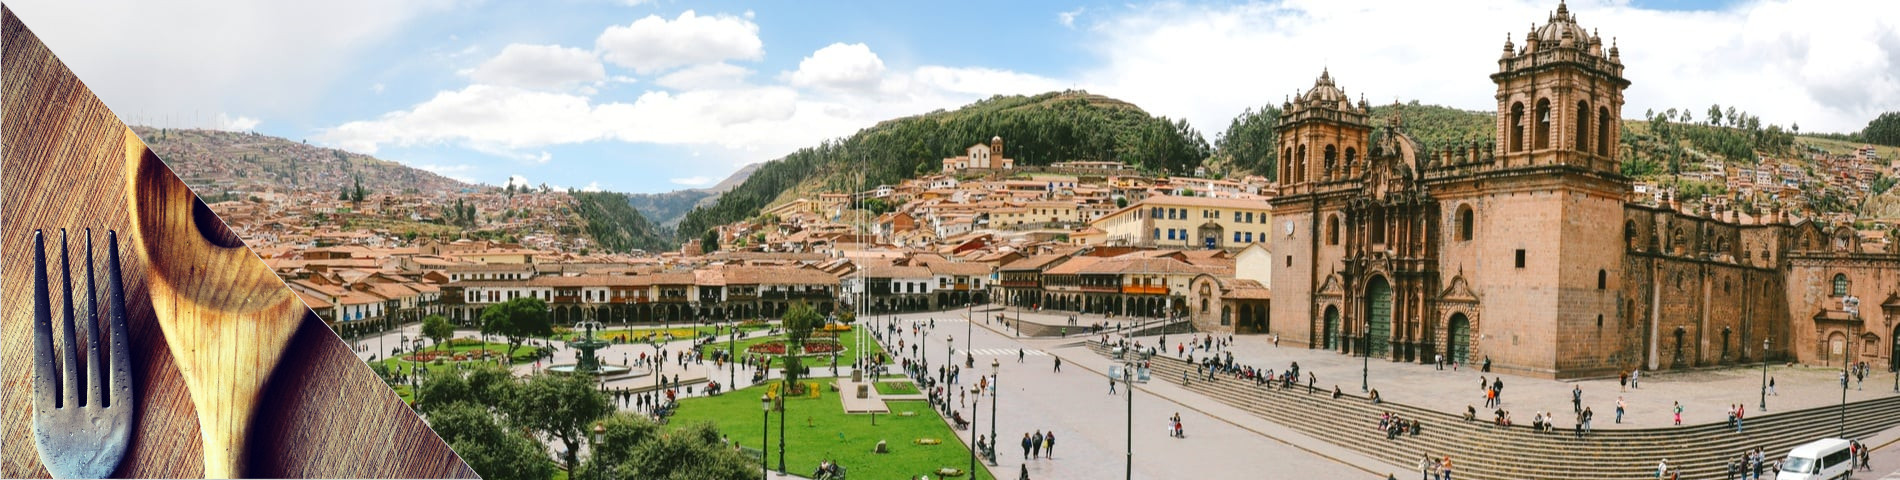 Cuzco - Espanhol & Culinária